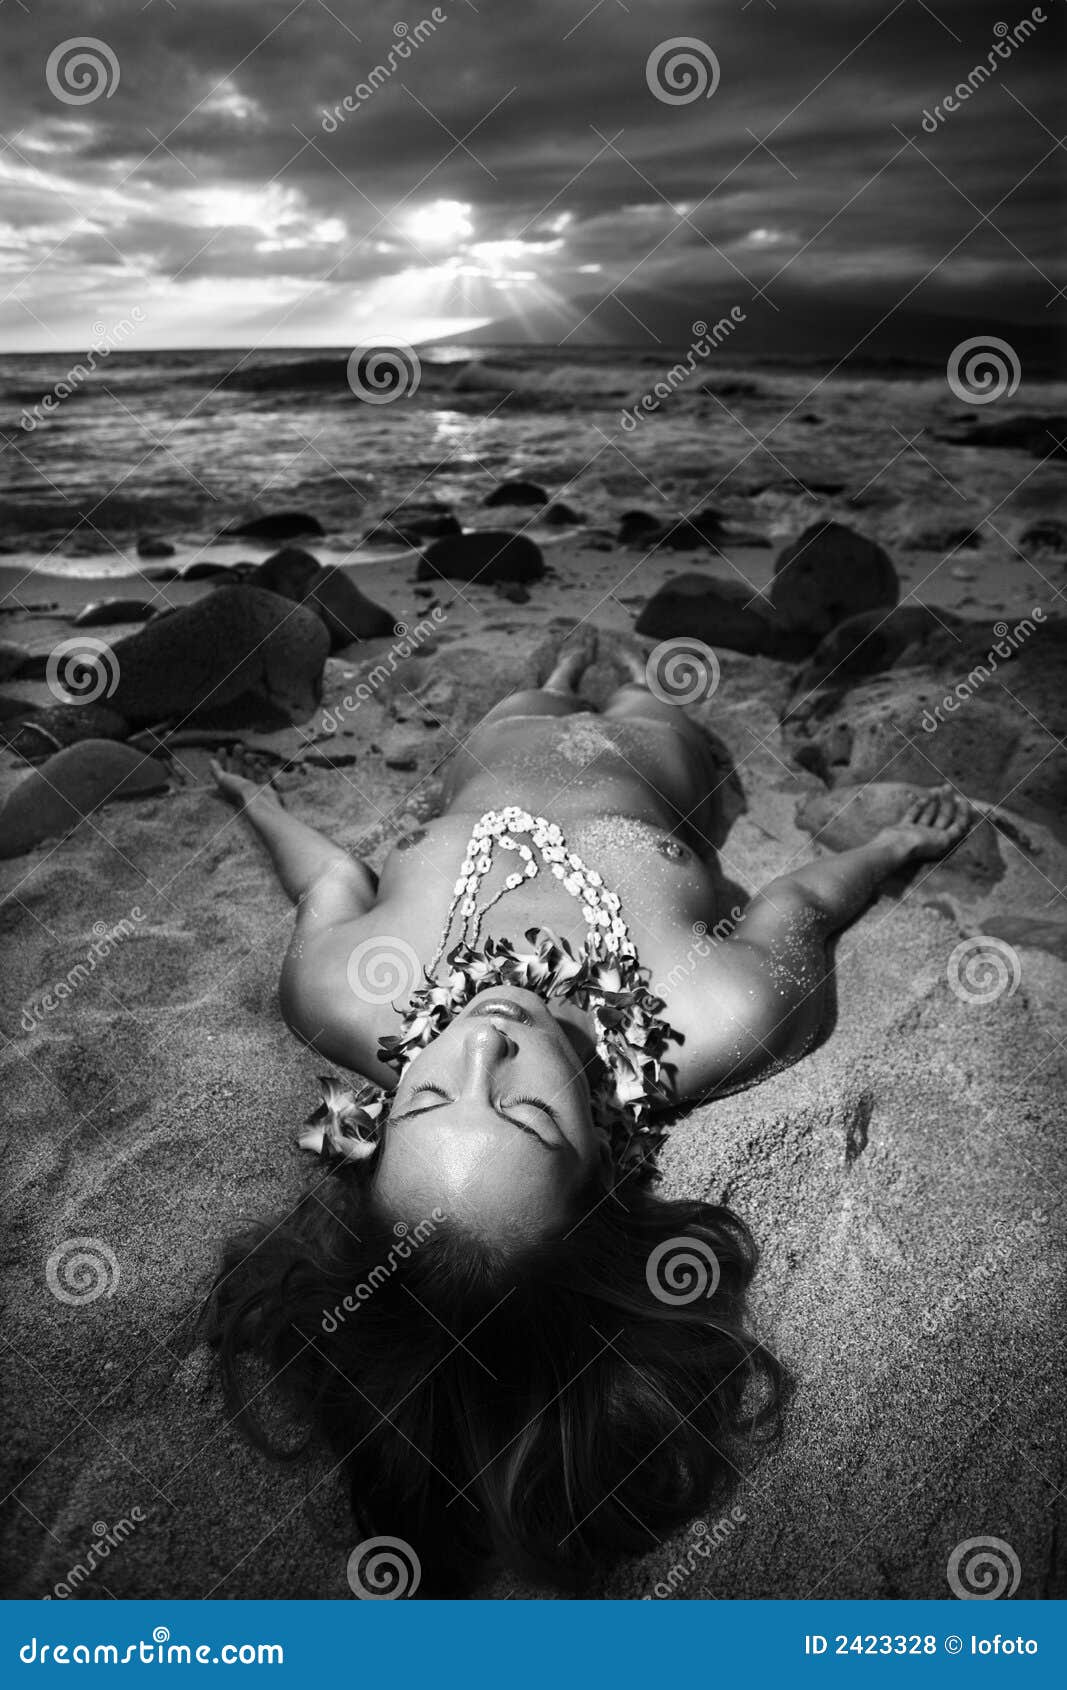 daniel fermin recommends female beach nude pic